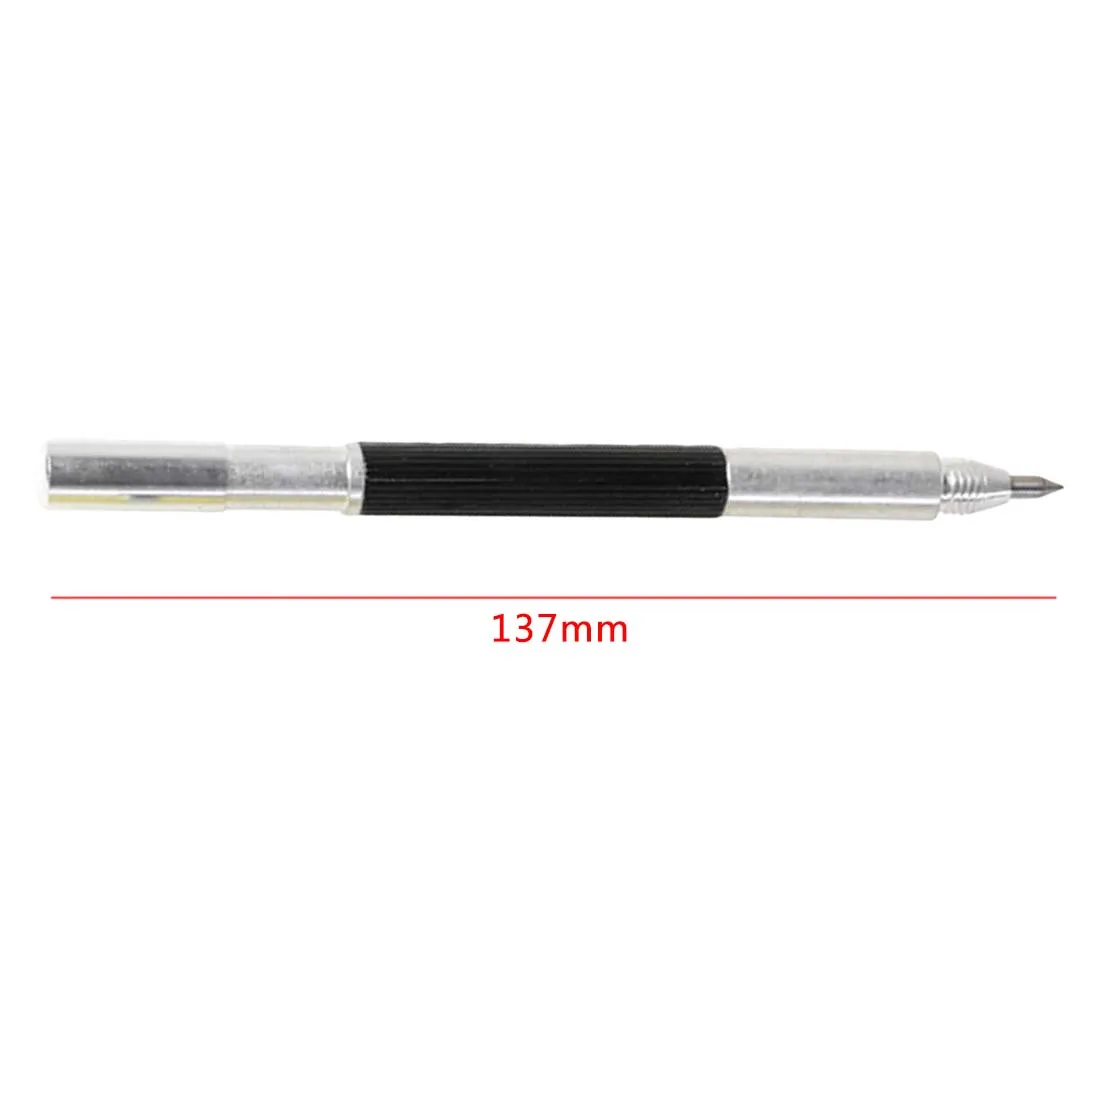 Ручка наконечником резчик по стеклу карбидный разметчик жесткий металлический для резки плитки двуглавый машина надписи ручка гравер